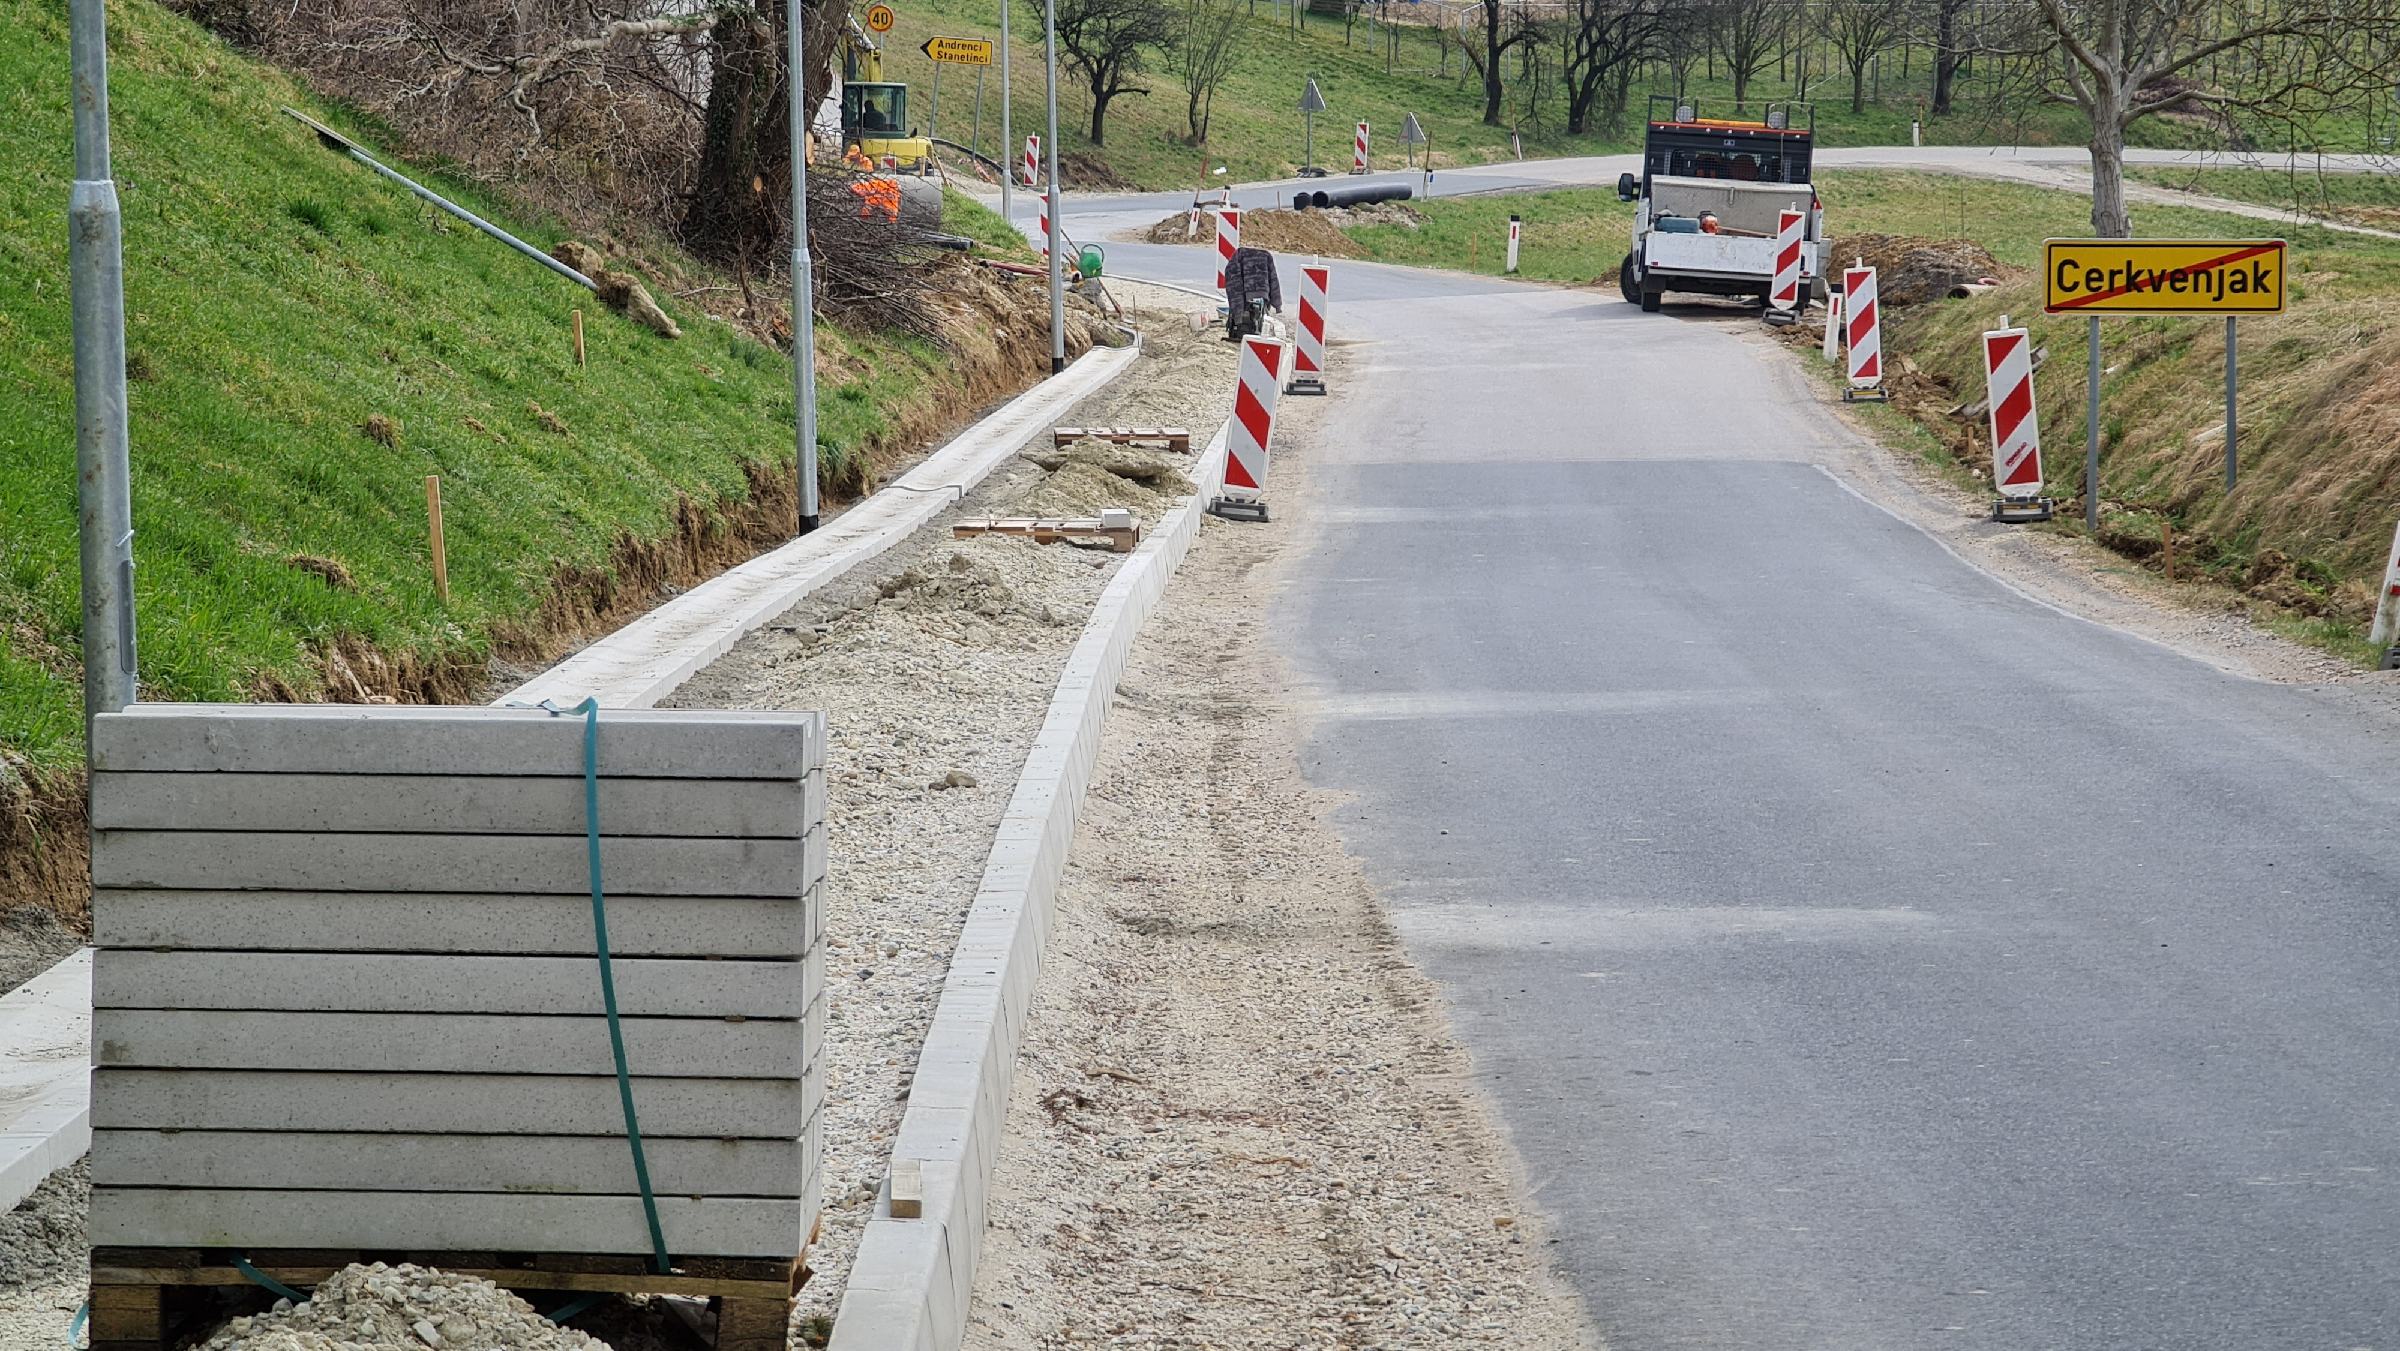 Po obnovi državne ceste skozi center občine v Cerkvenjaku z direkcijo v nove projekte